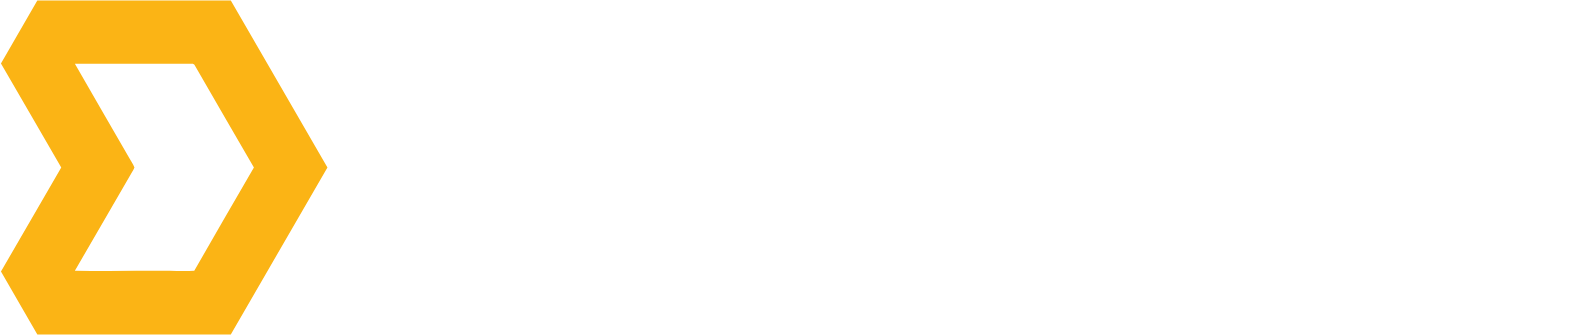 Direct Digital Holdings logo large for dark backgrounds (transparent PNG)